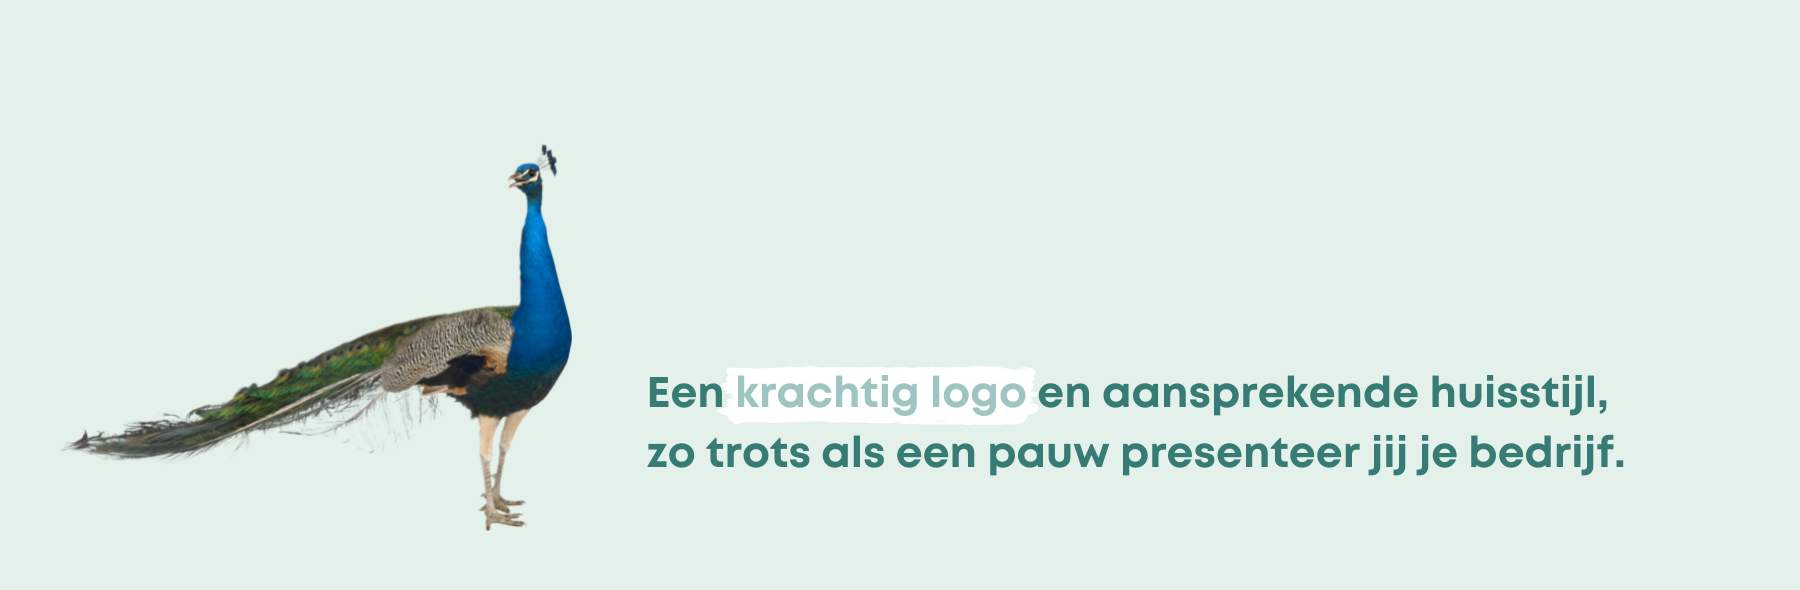 Online en offline branding - Design Domein Reeuwijk